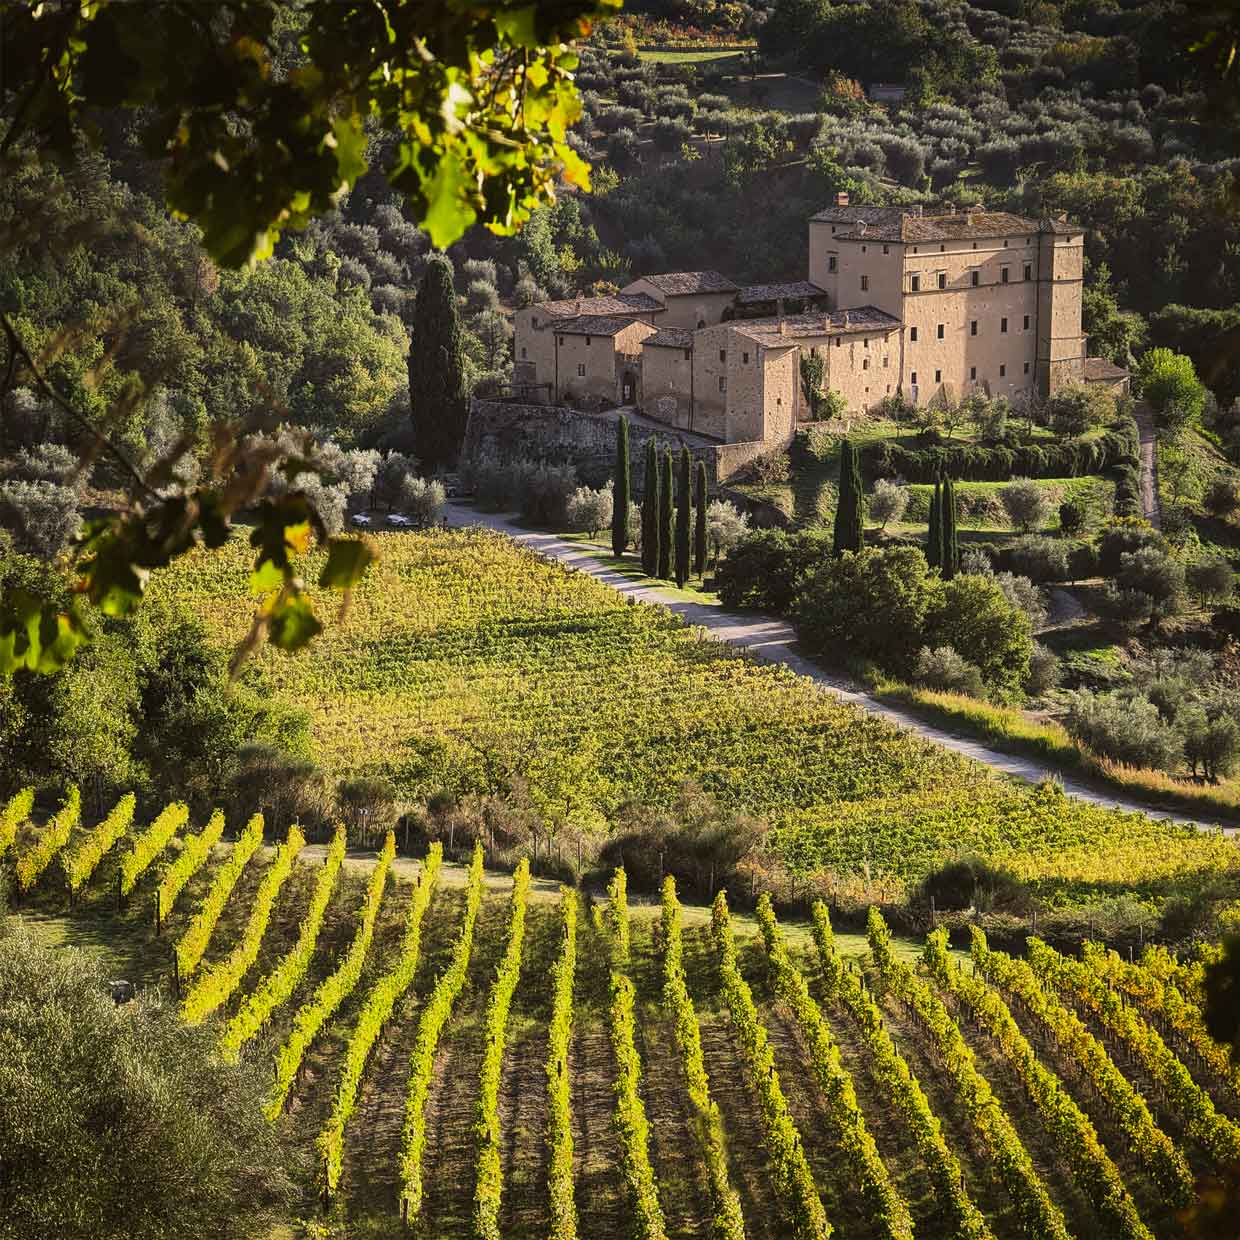 Castle in Tuscany in vineyards